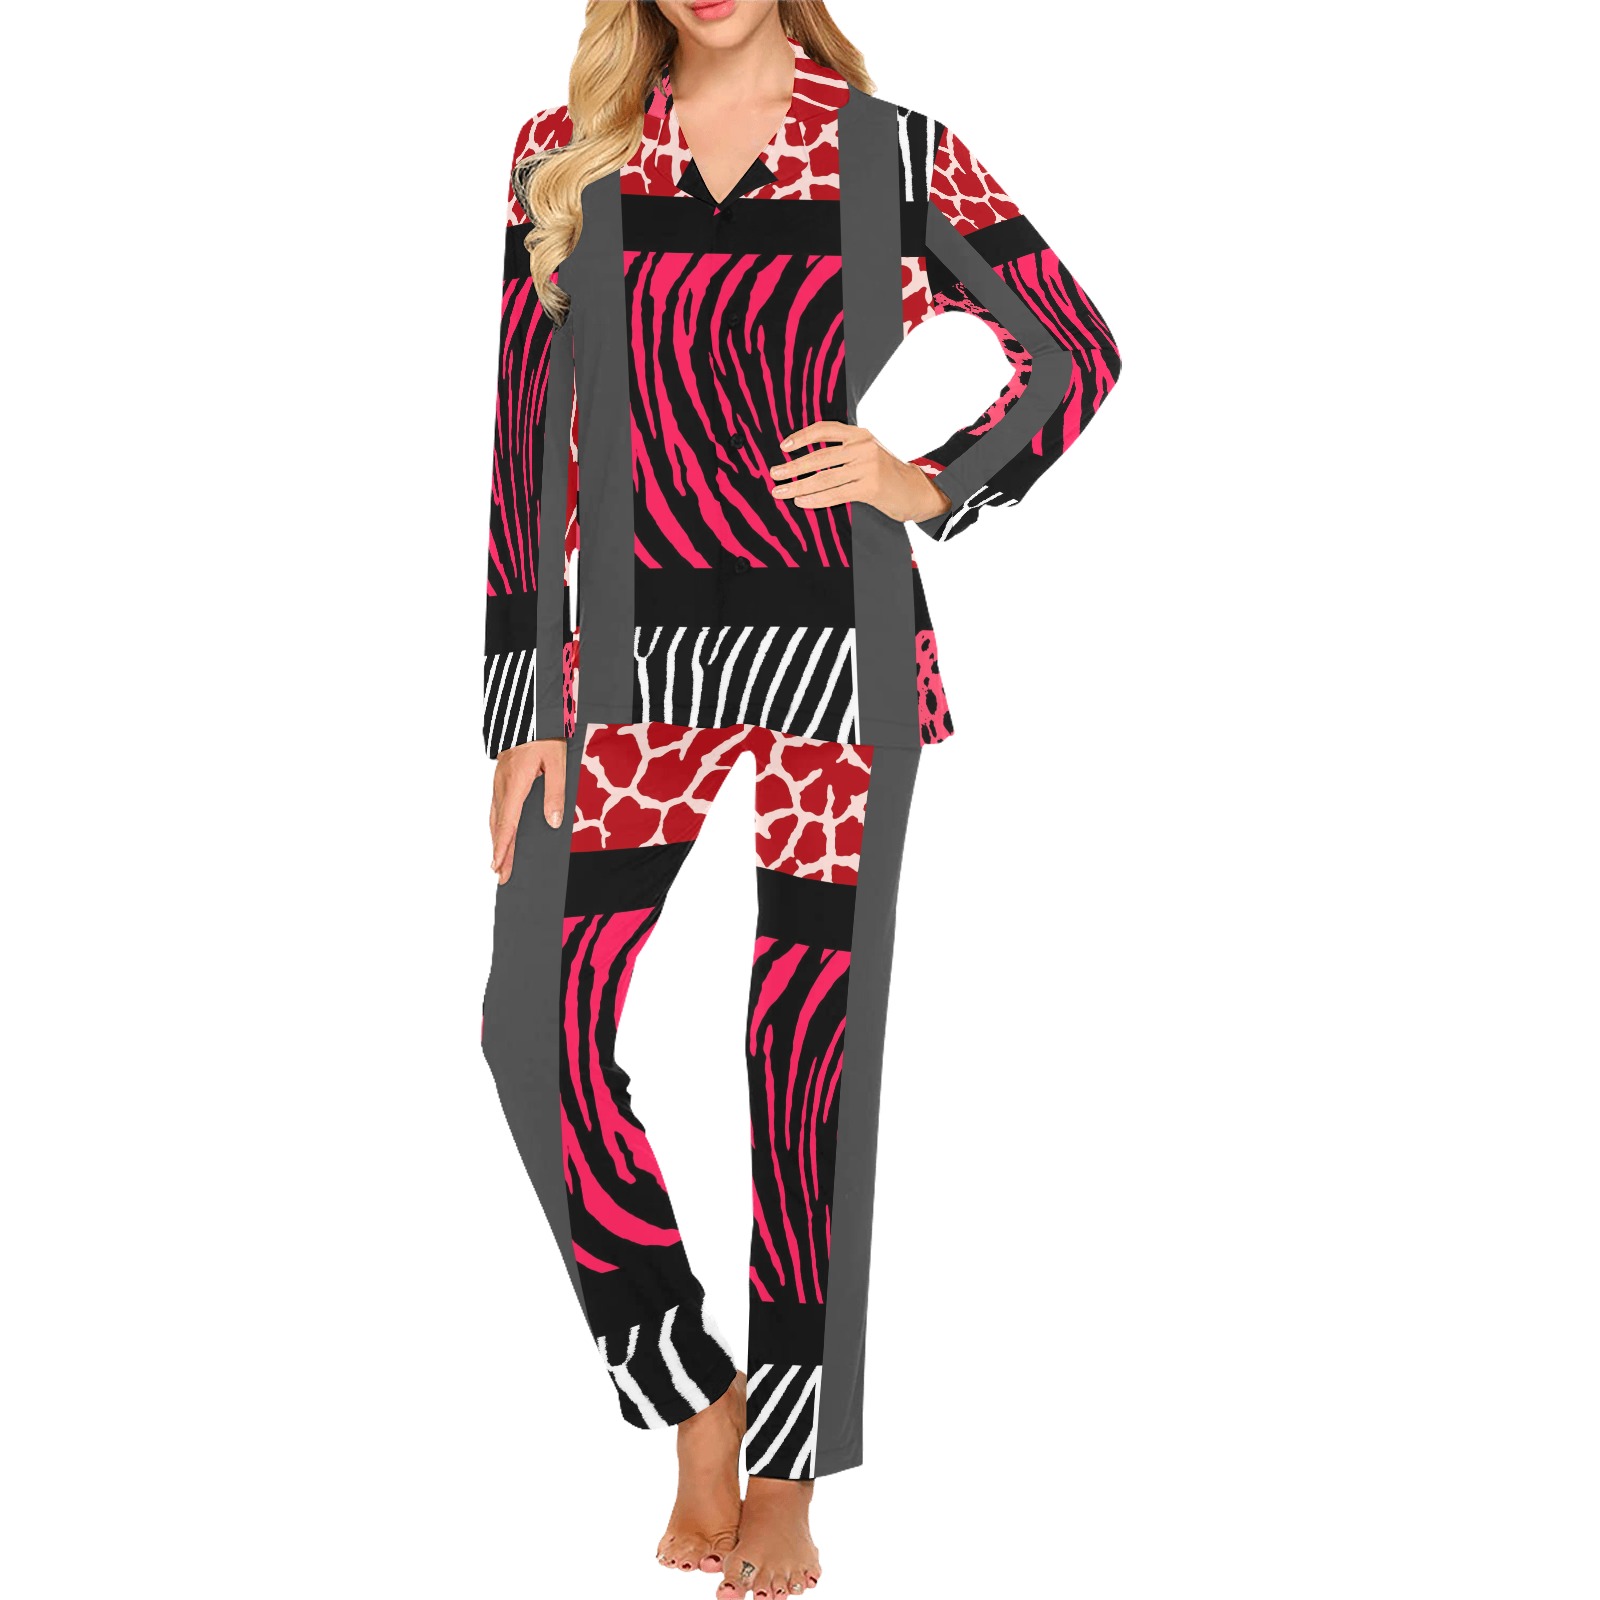 Red Mixed Animal Print Women's Long Pajama Set